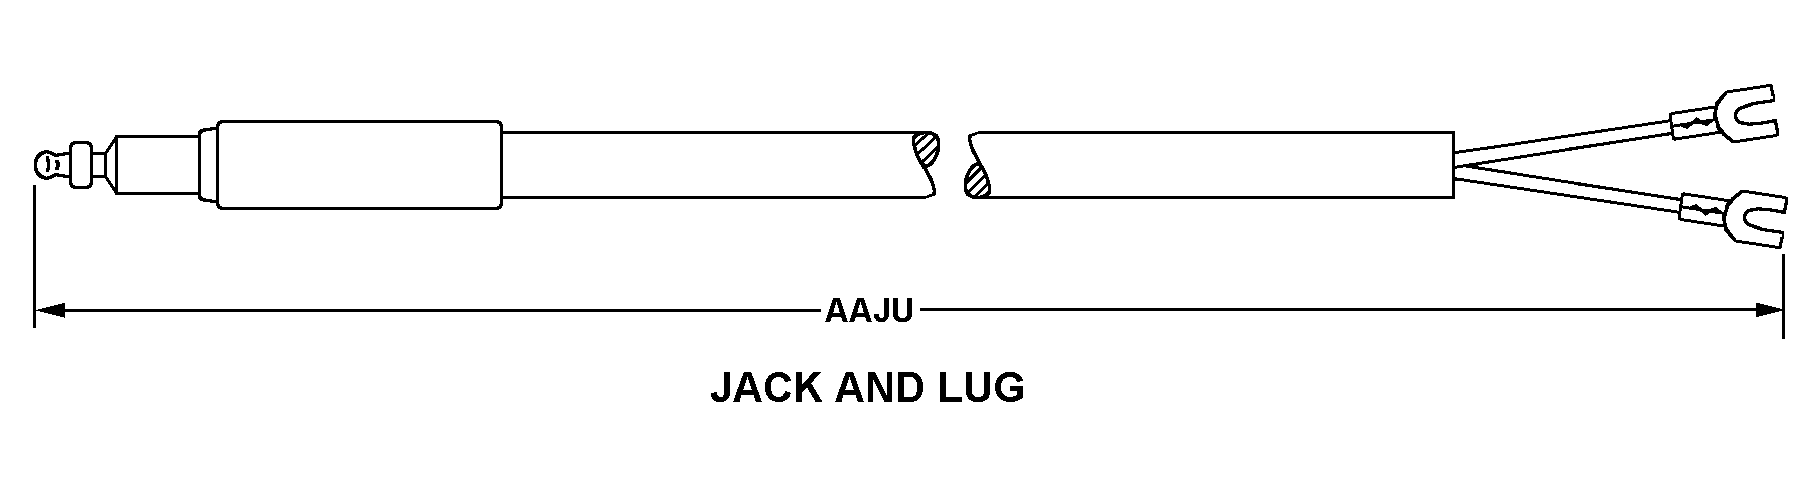 JACK AND LUG style nsn 6150-00-042-7573